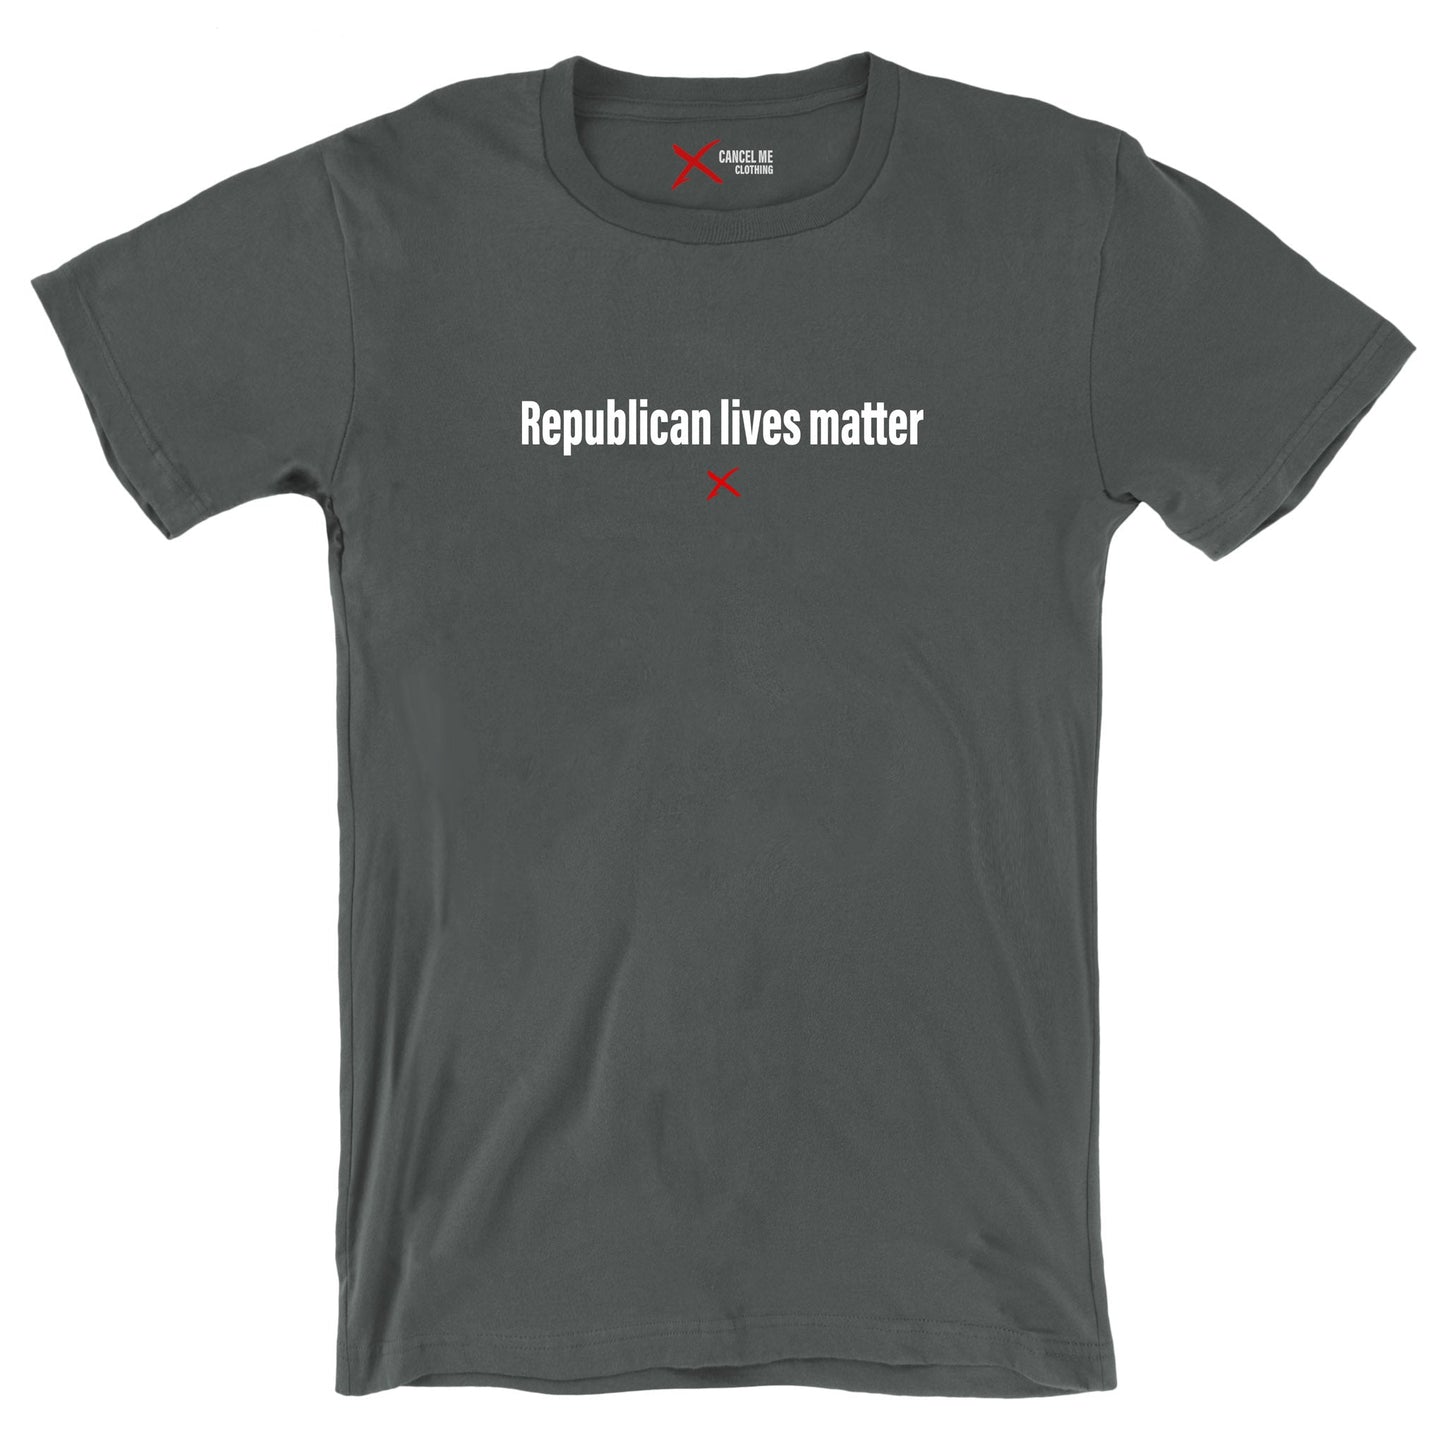 Republican lives matter - Shirt